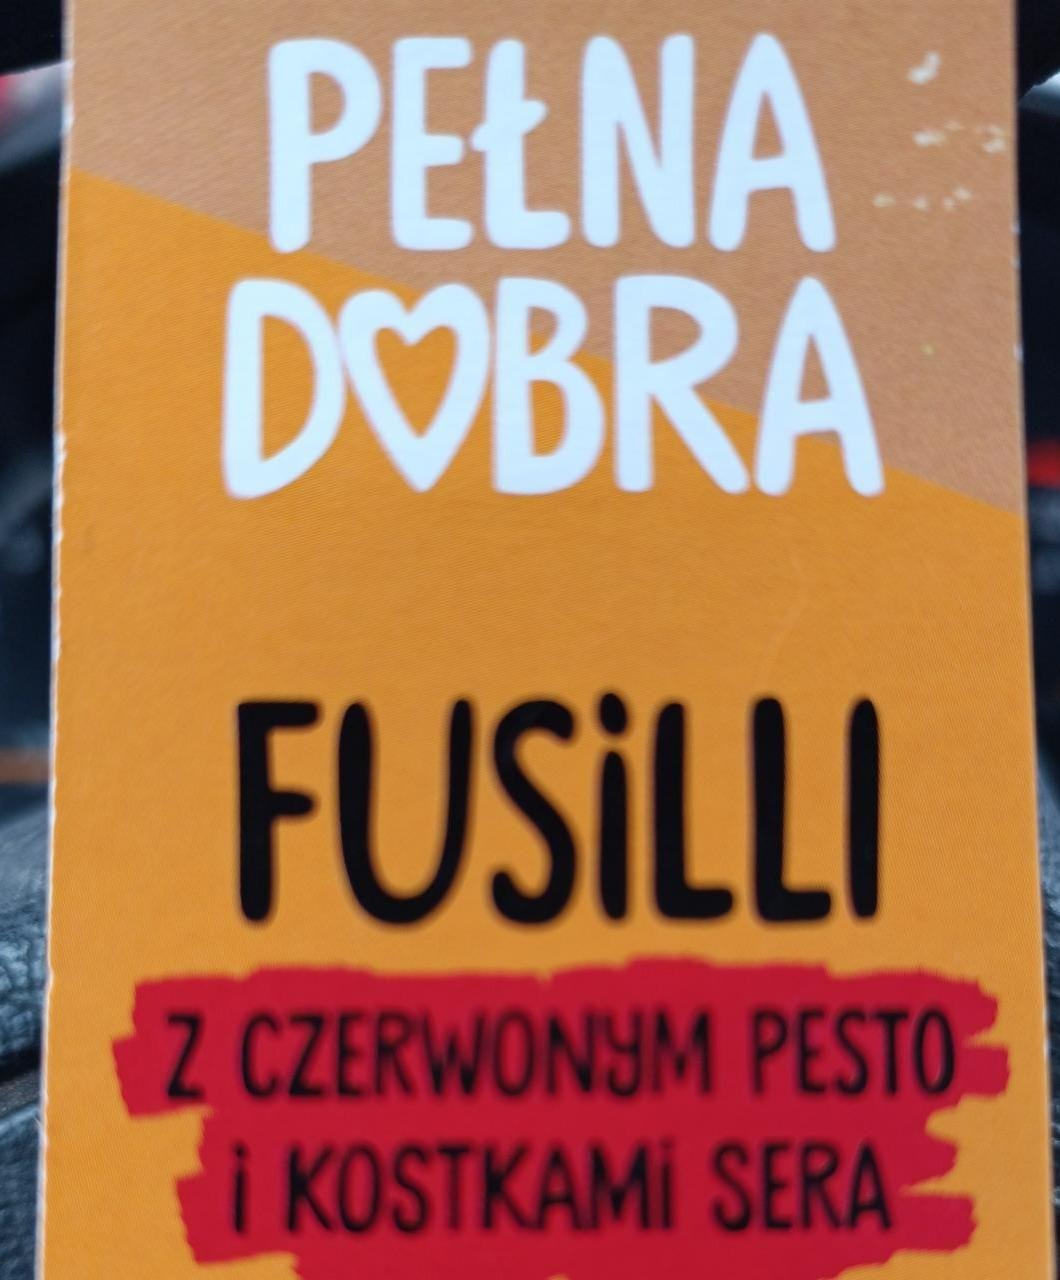 Fotografie - Fusilli z czerwonym pesto i kostkami sera Pełna dobra